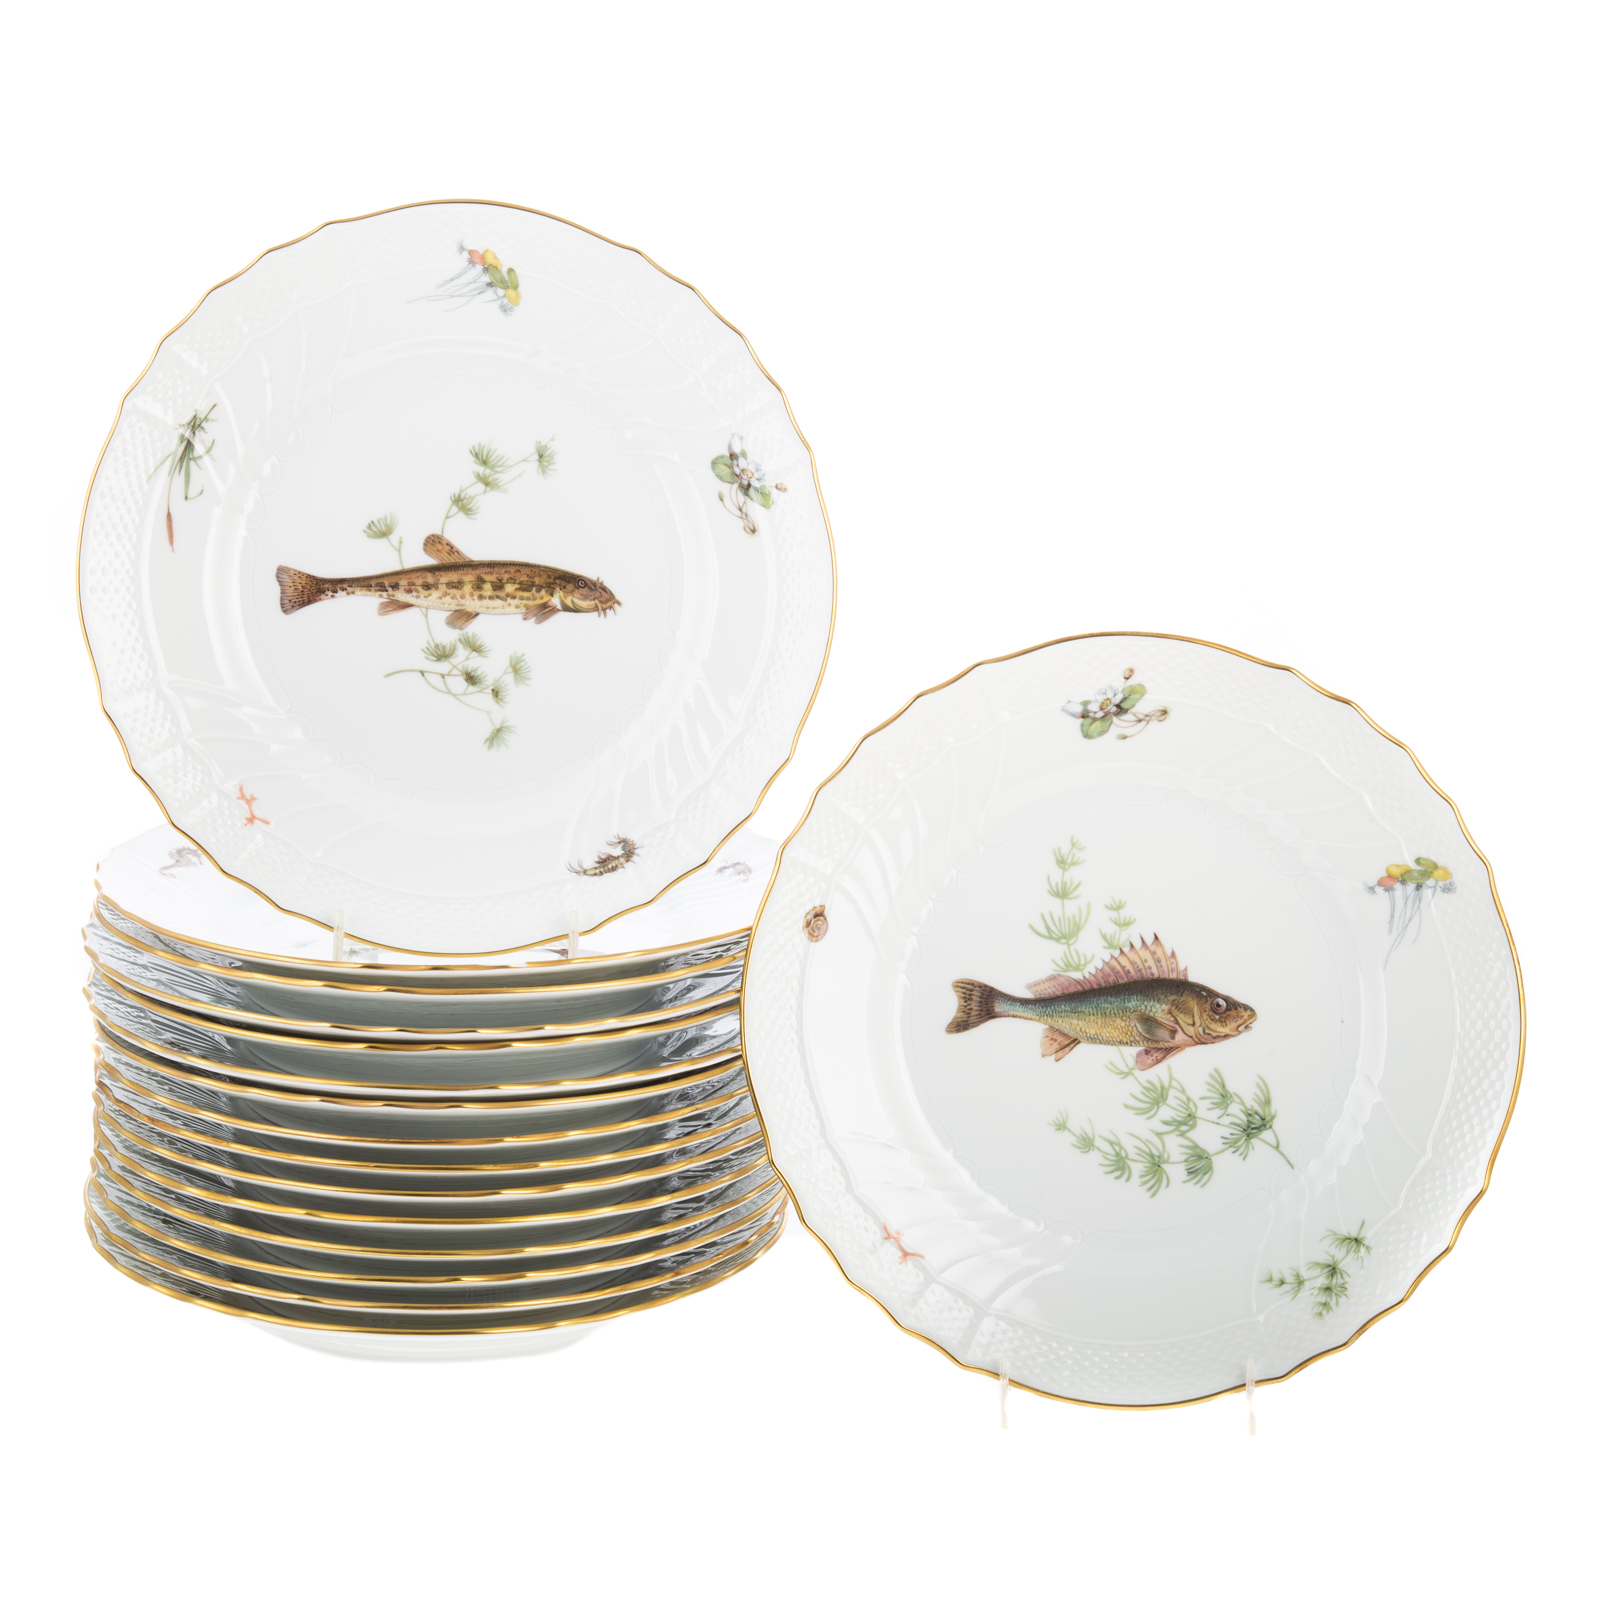 16 RICHARD GINORI FISH PLATES Plates